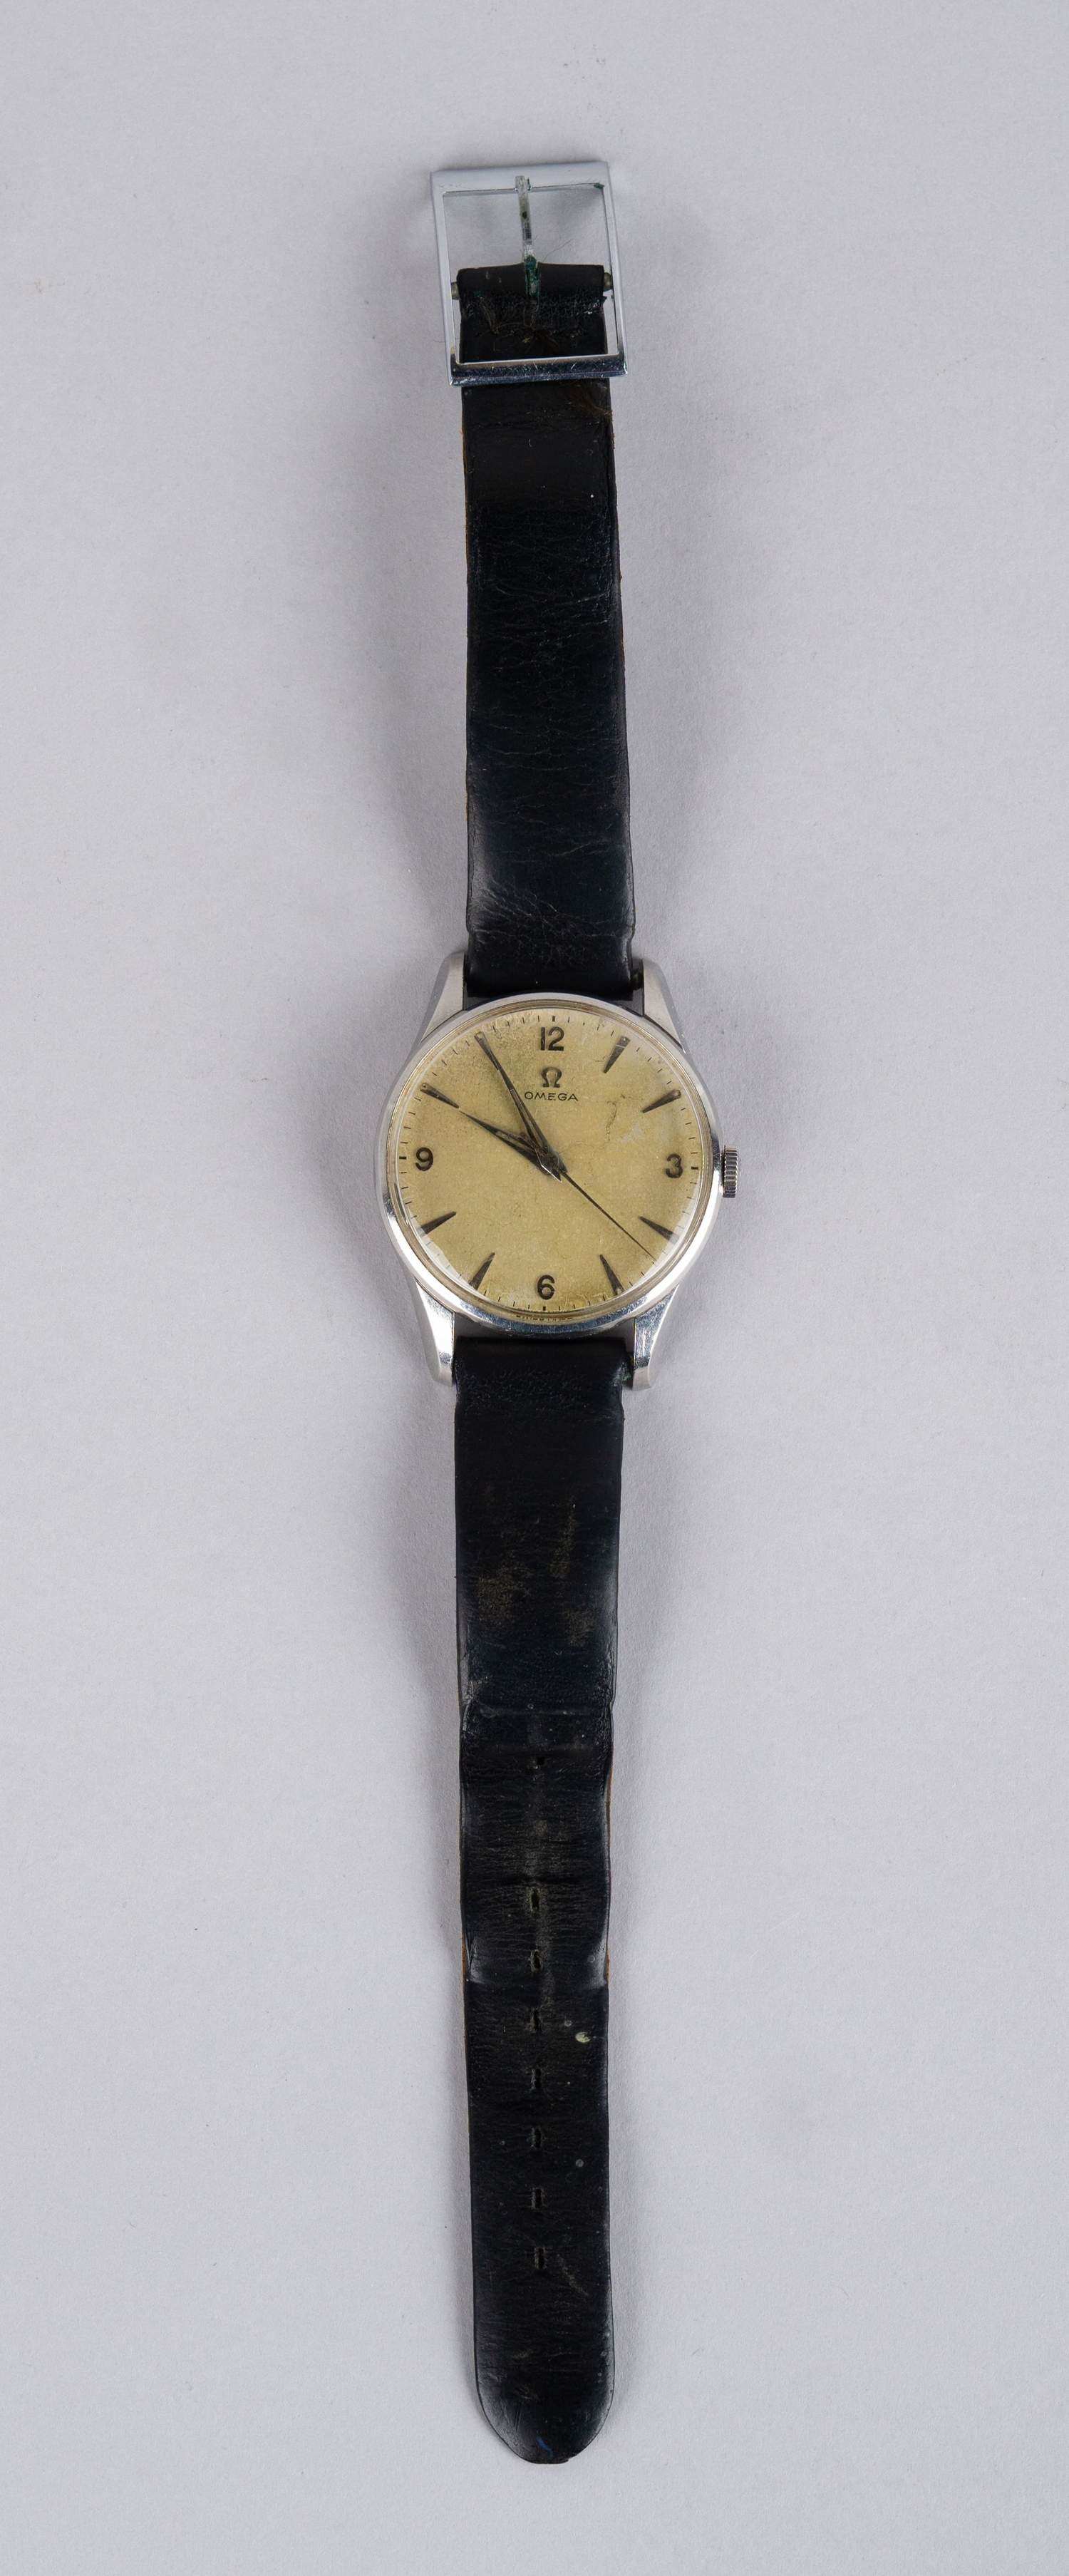 Наручные часы «OMEGA». Швейцария, 1940-ые годы.